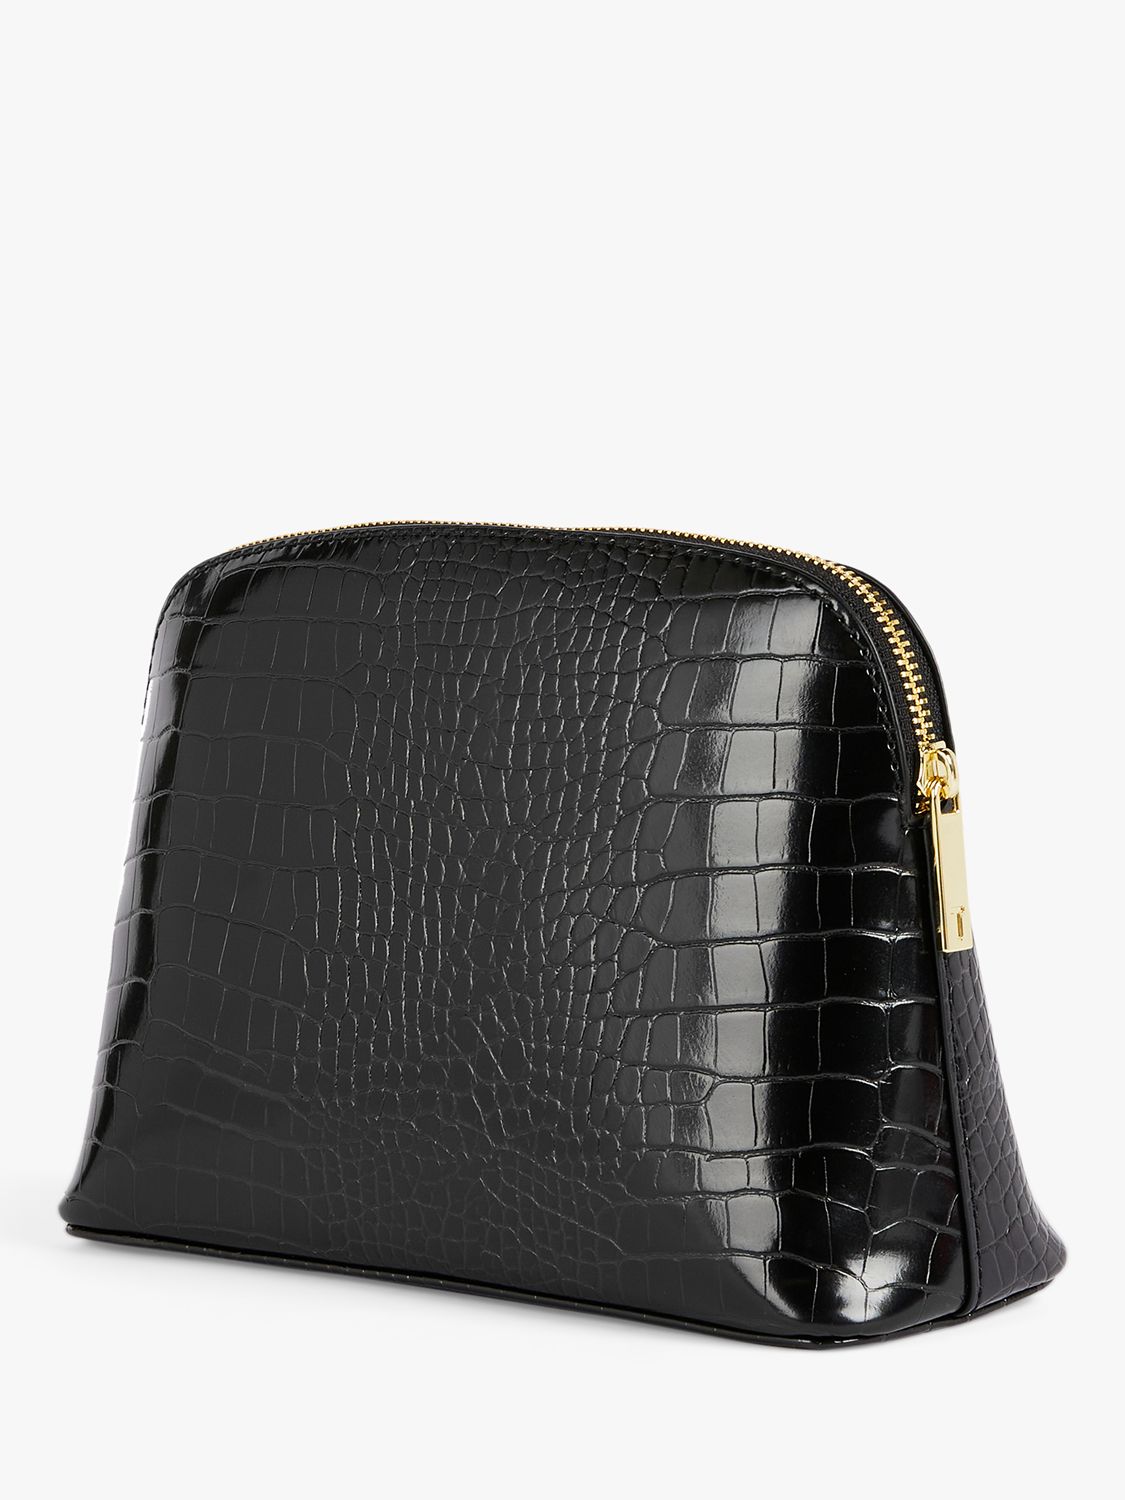 Ted Baker Crocala Croc Effect Makeup Bag, Black, One Size 2